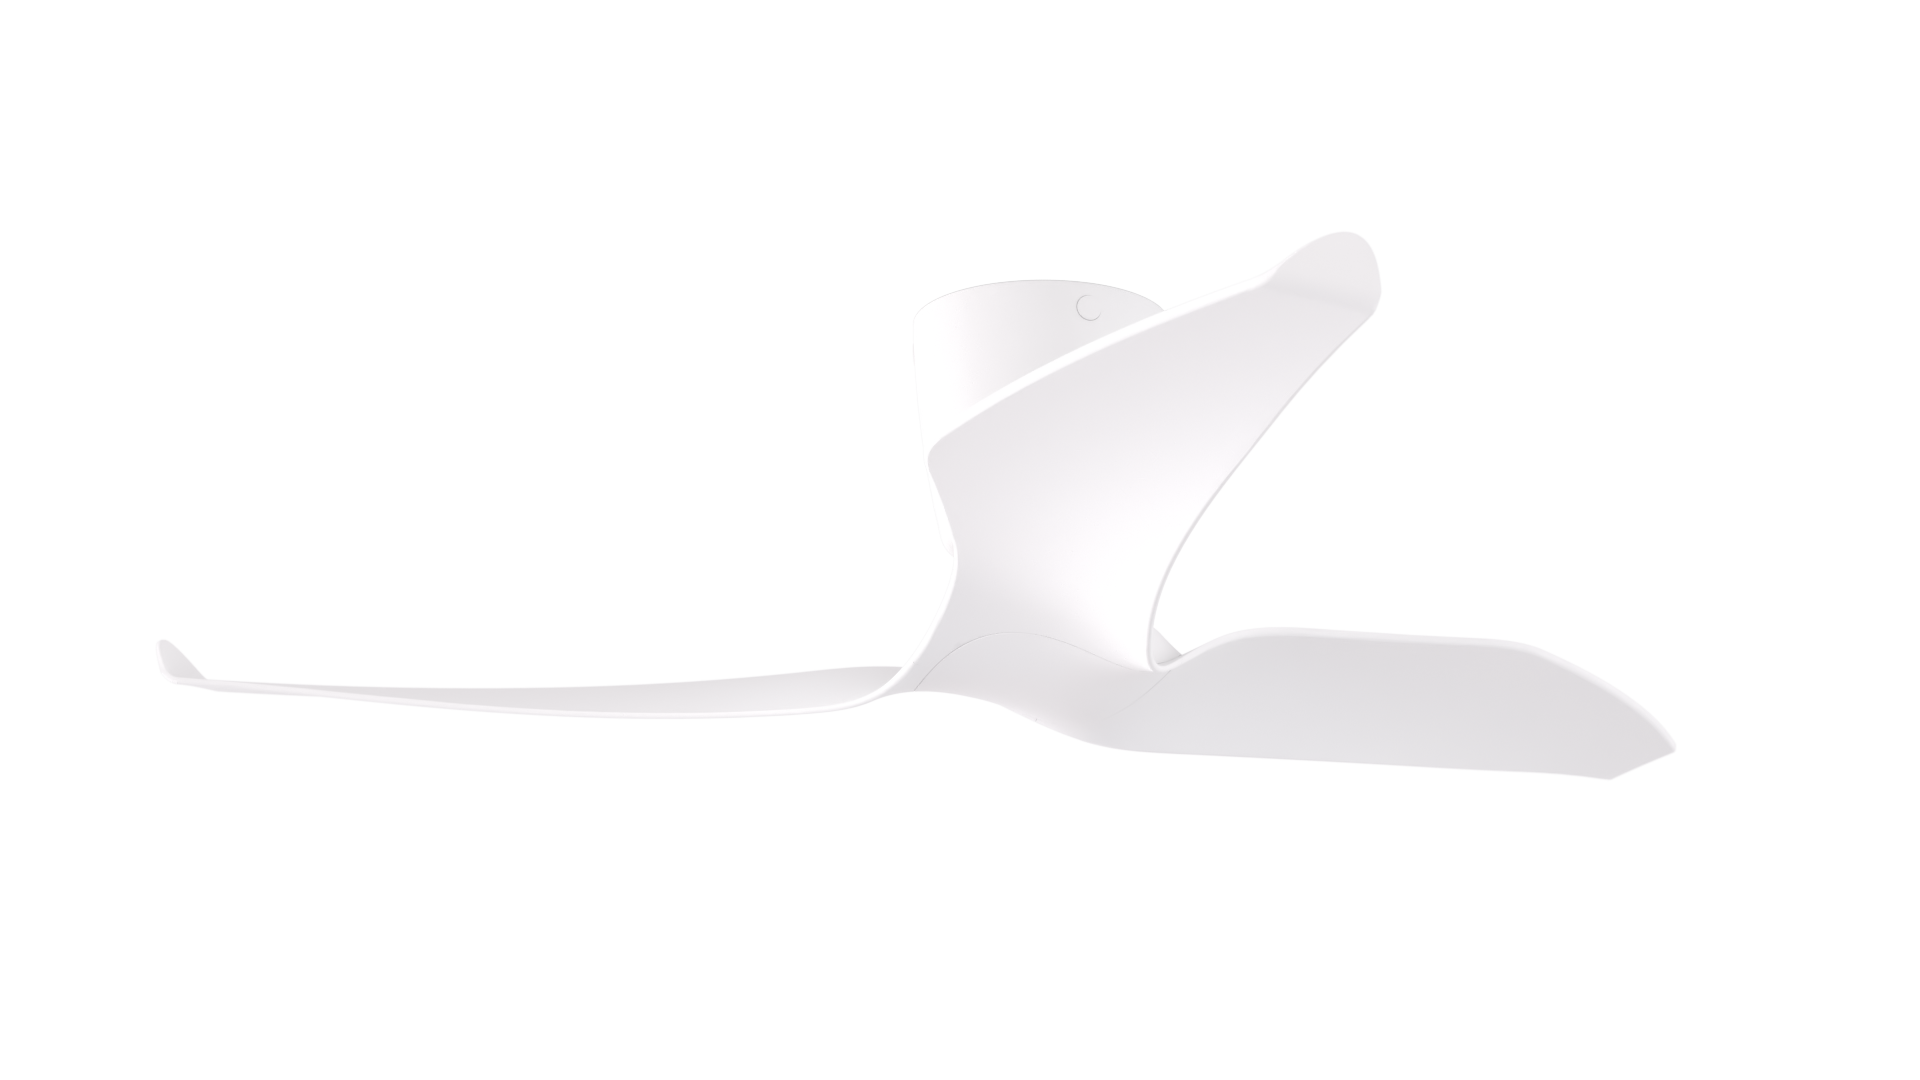 Aeratron FQ3 tri blade all white